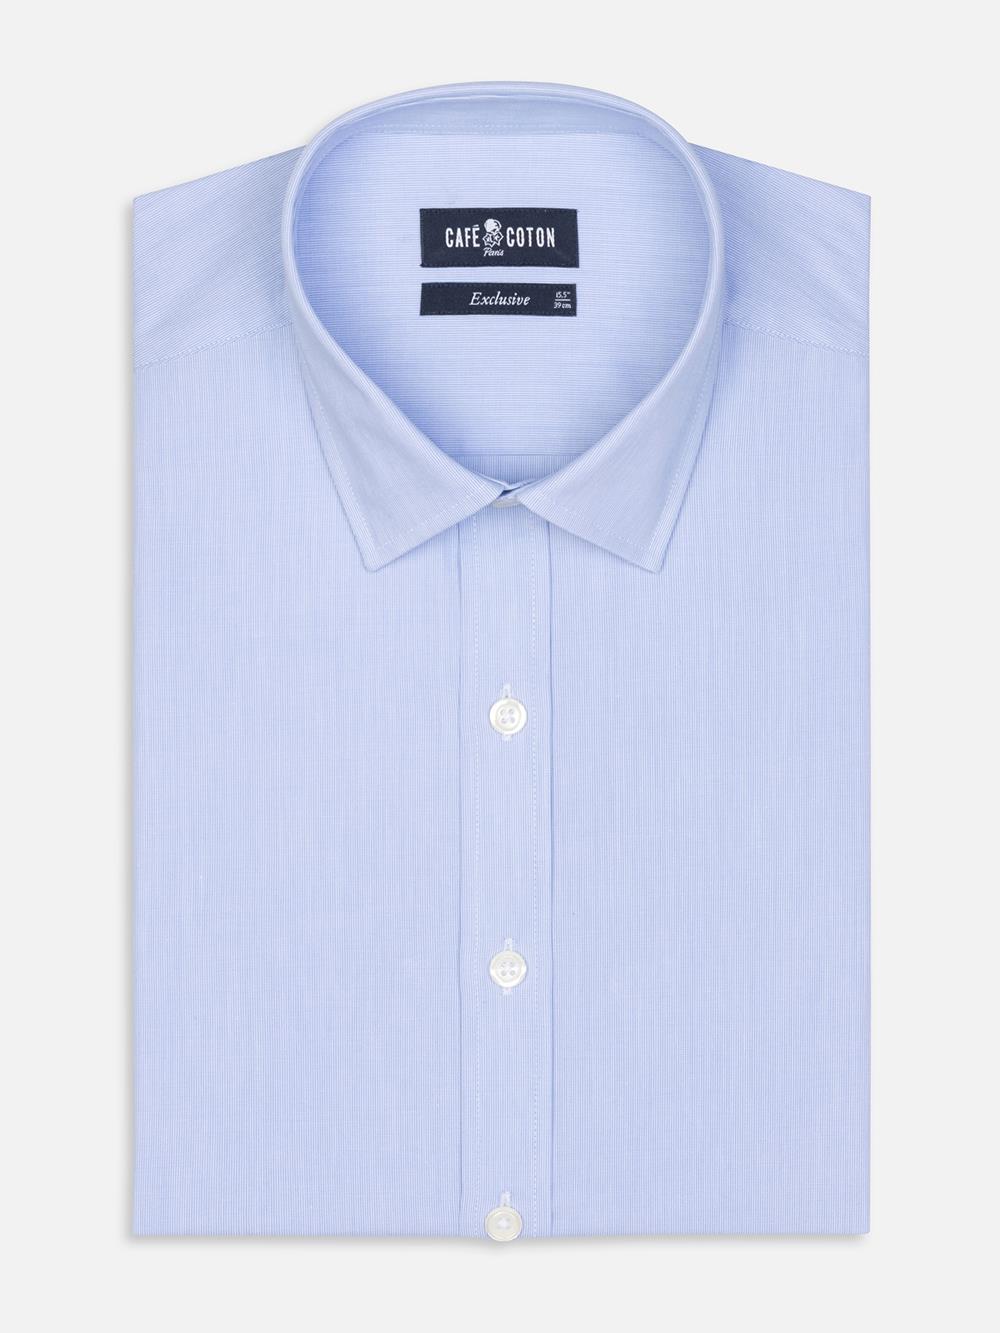 Tailliertes Hemd mit tausend Streifen himmelblau - Große Ärmellänge